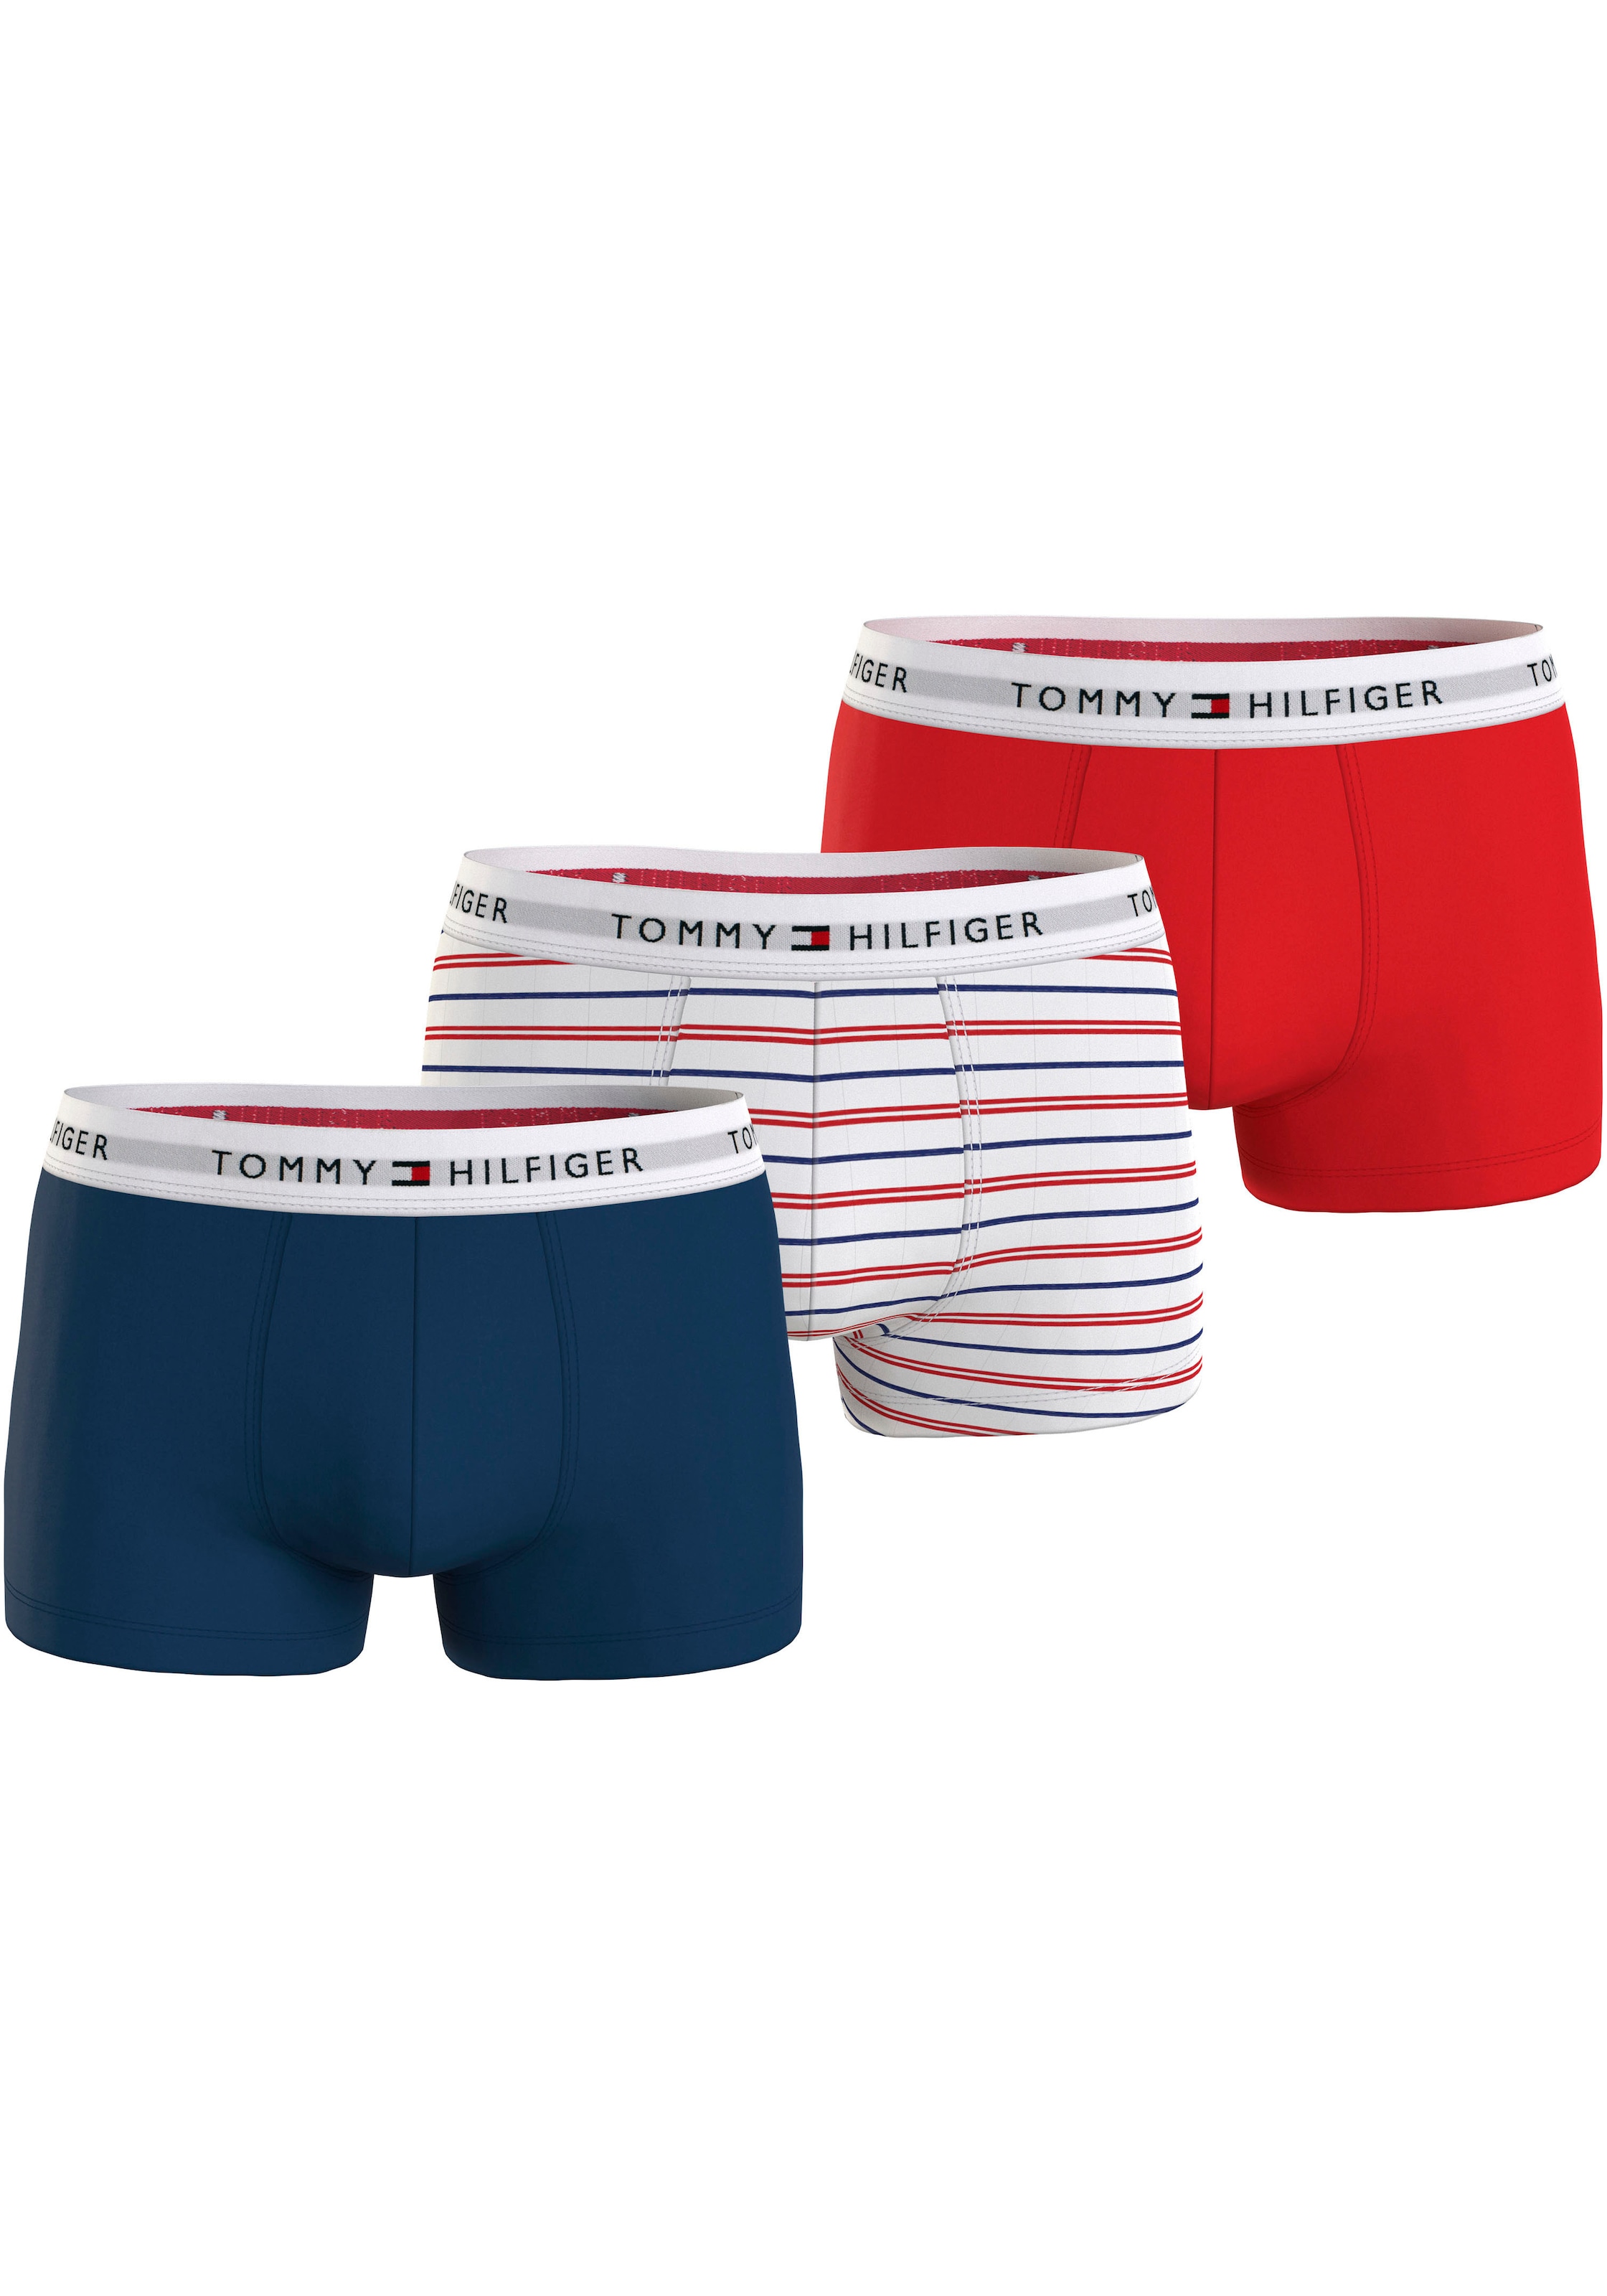 Tommy Hilfiger Underwear online BAUR kaufen 